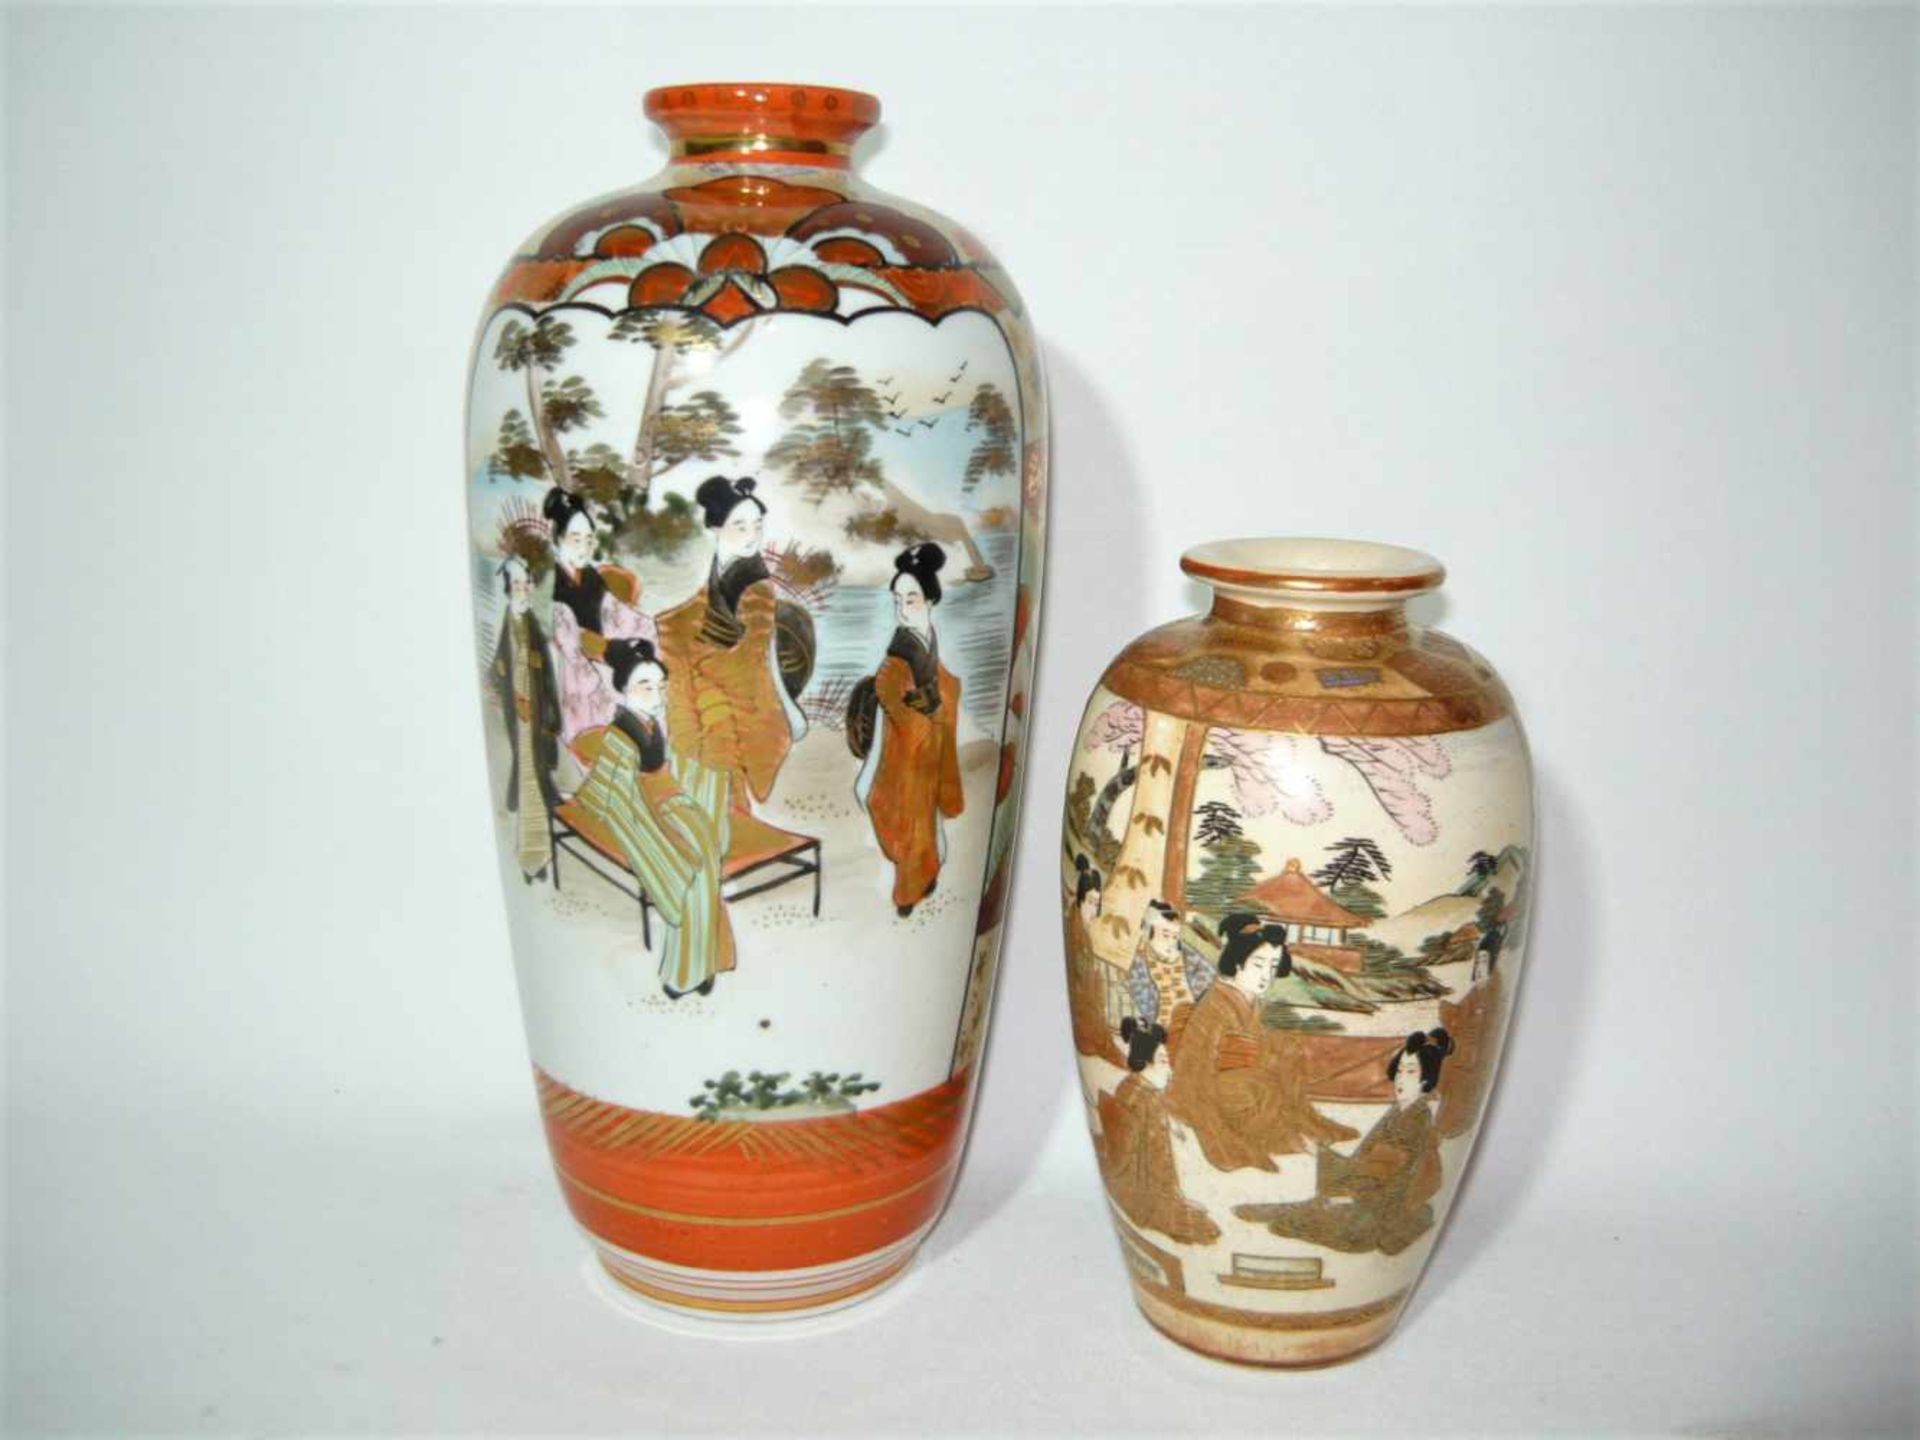 Satsumavase mit feiner Bemalung. Japan um 1900. Signiert. ca. 17cm. Dazu größere Vase.- - -22.00 %